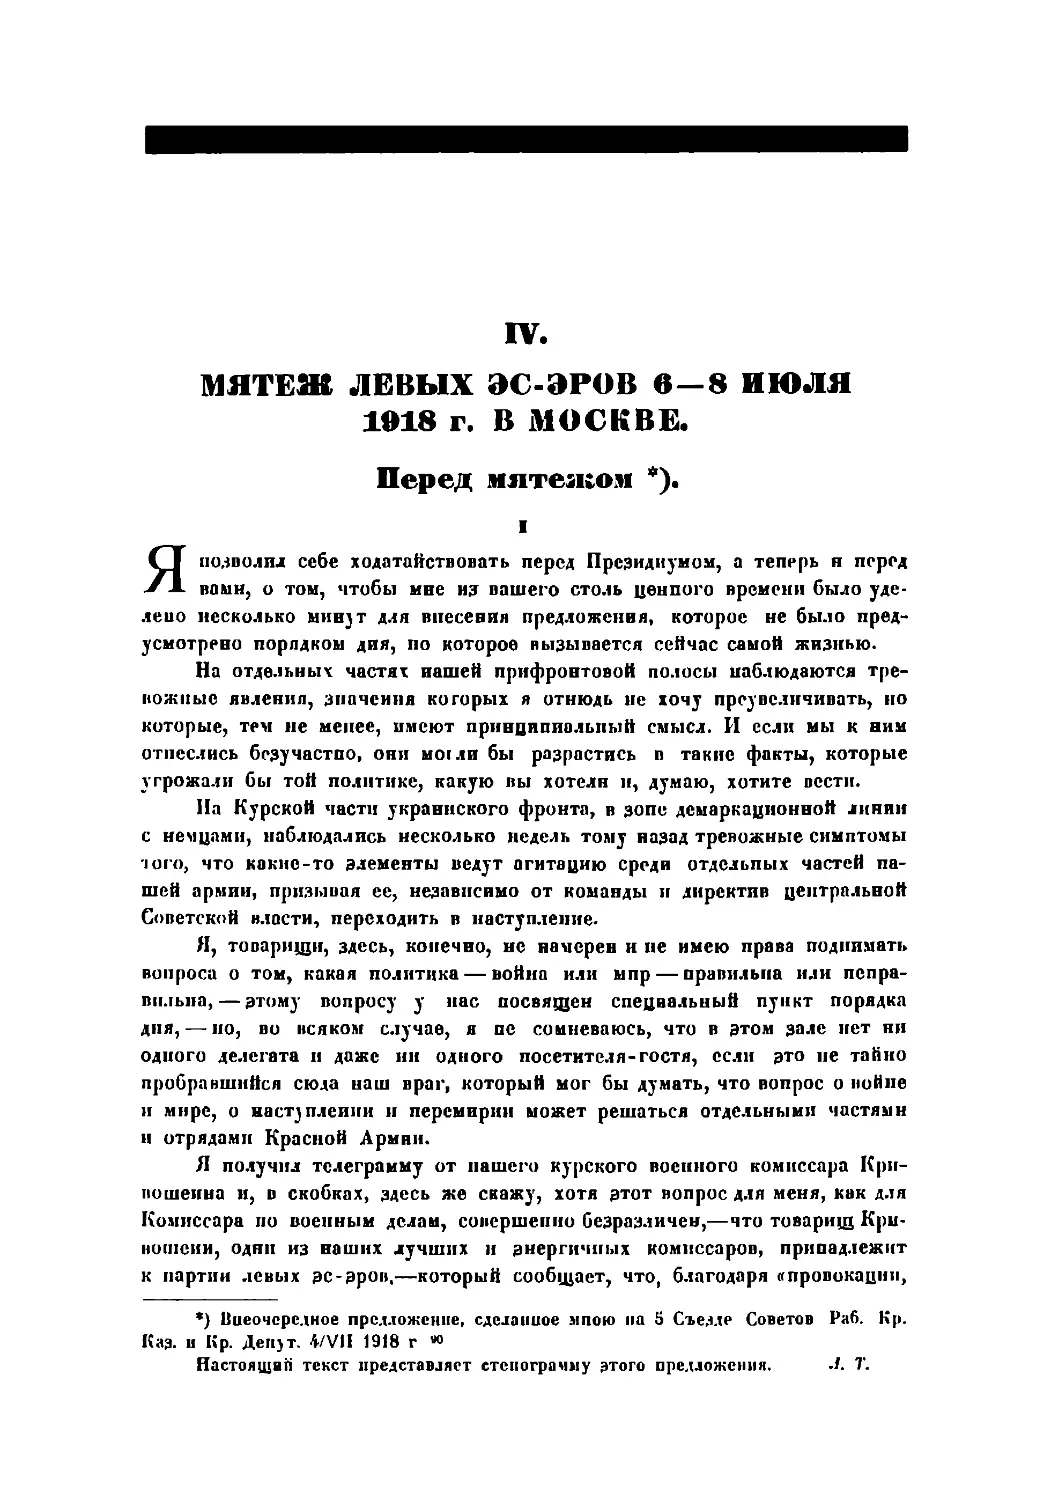 IV. Мятеж левых эс-эров 6—8 июля 1918 г. в Москве